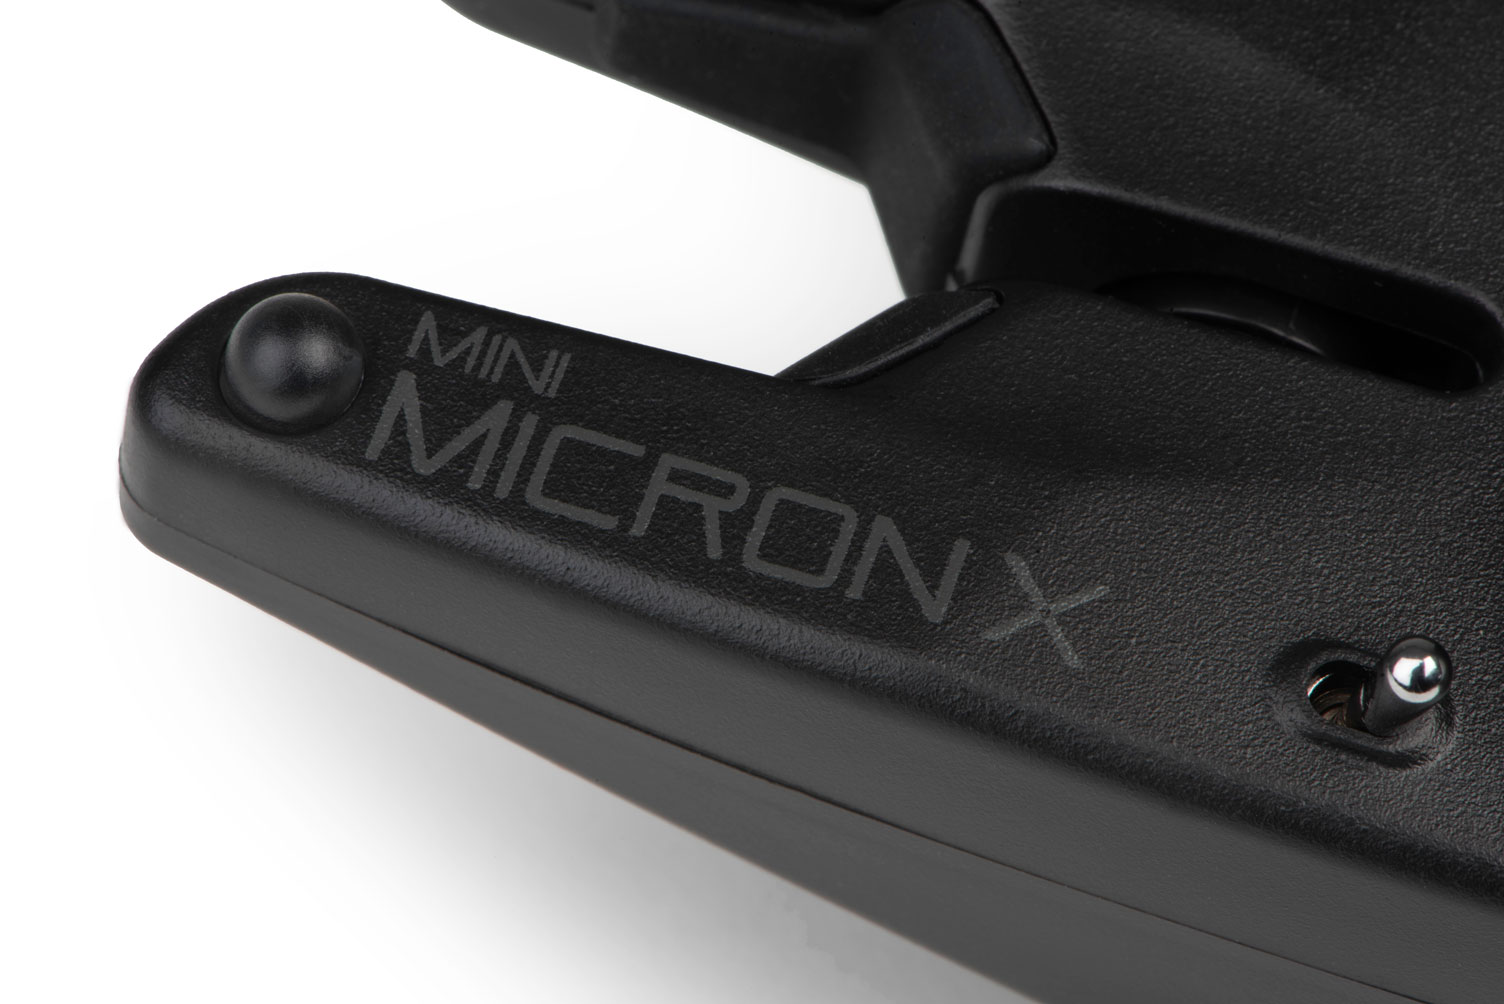 Fox Mini Micron X Alarma de Mordidas Set para 4 Cañas